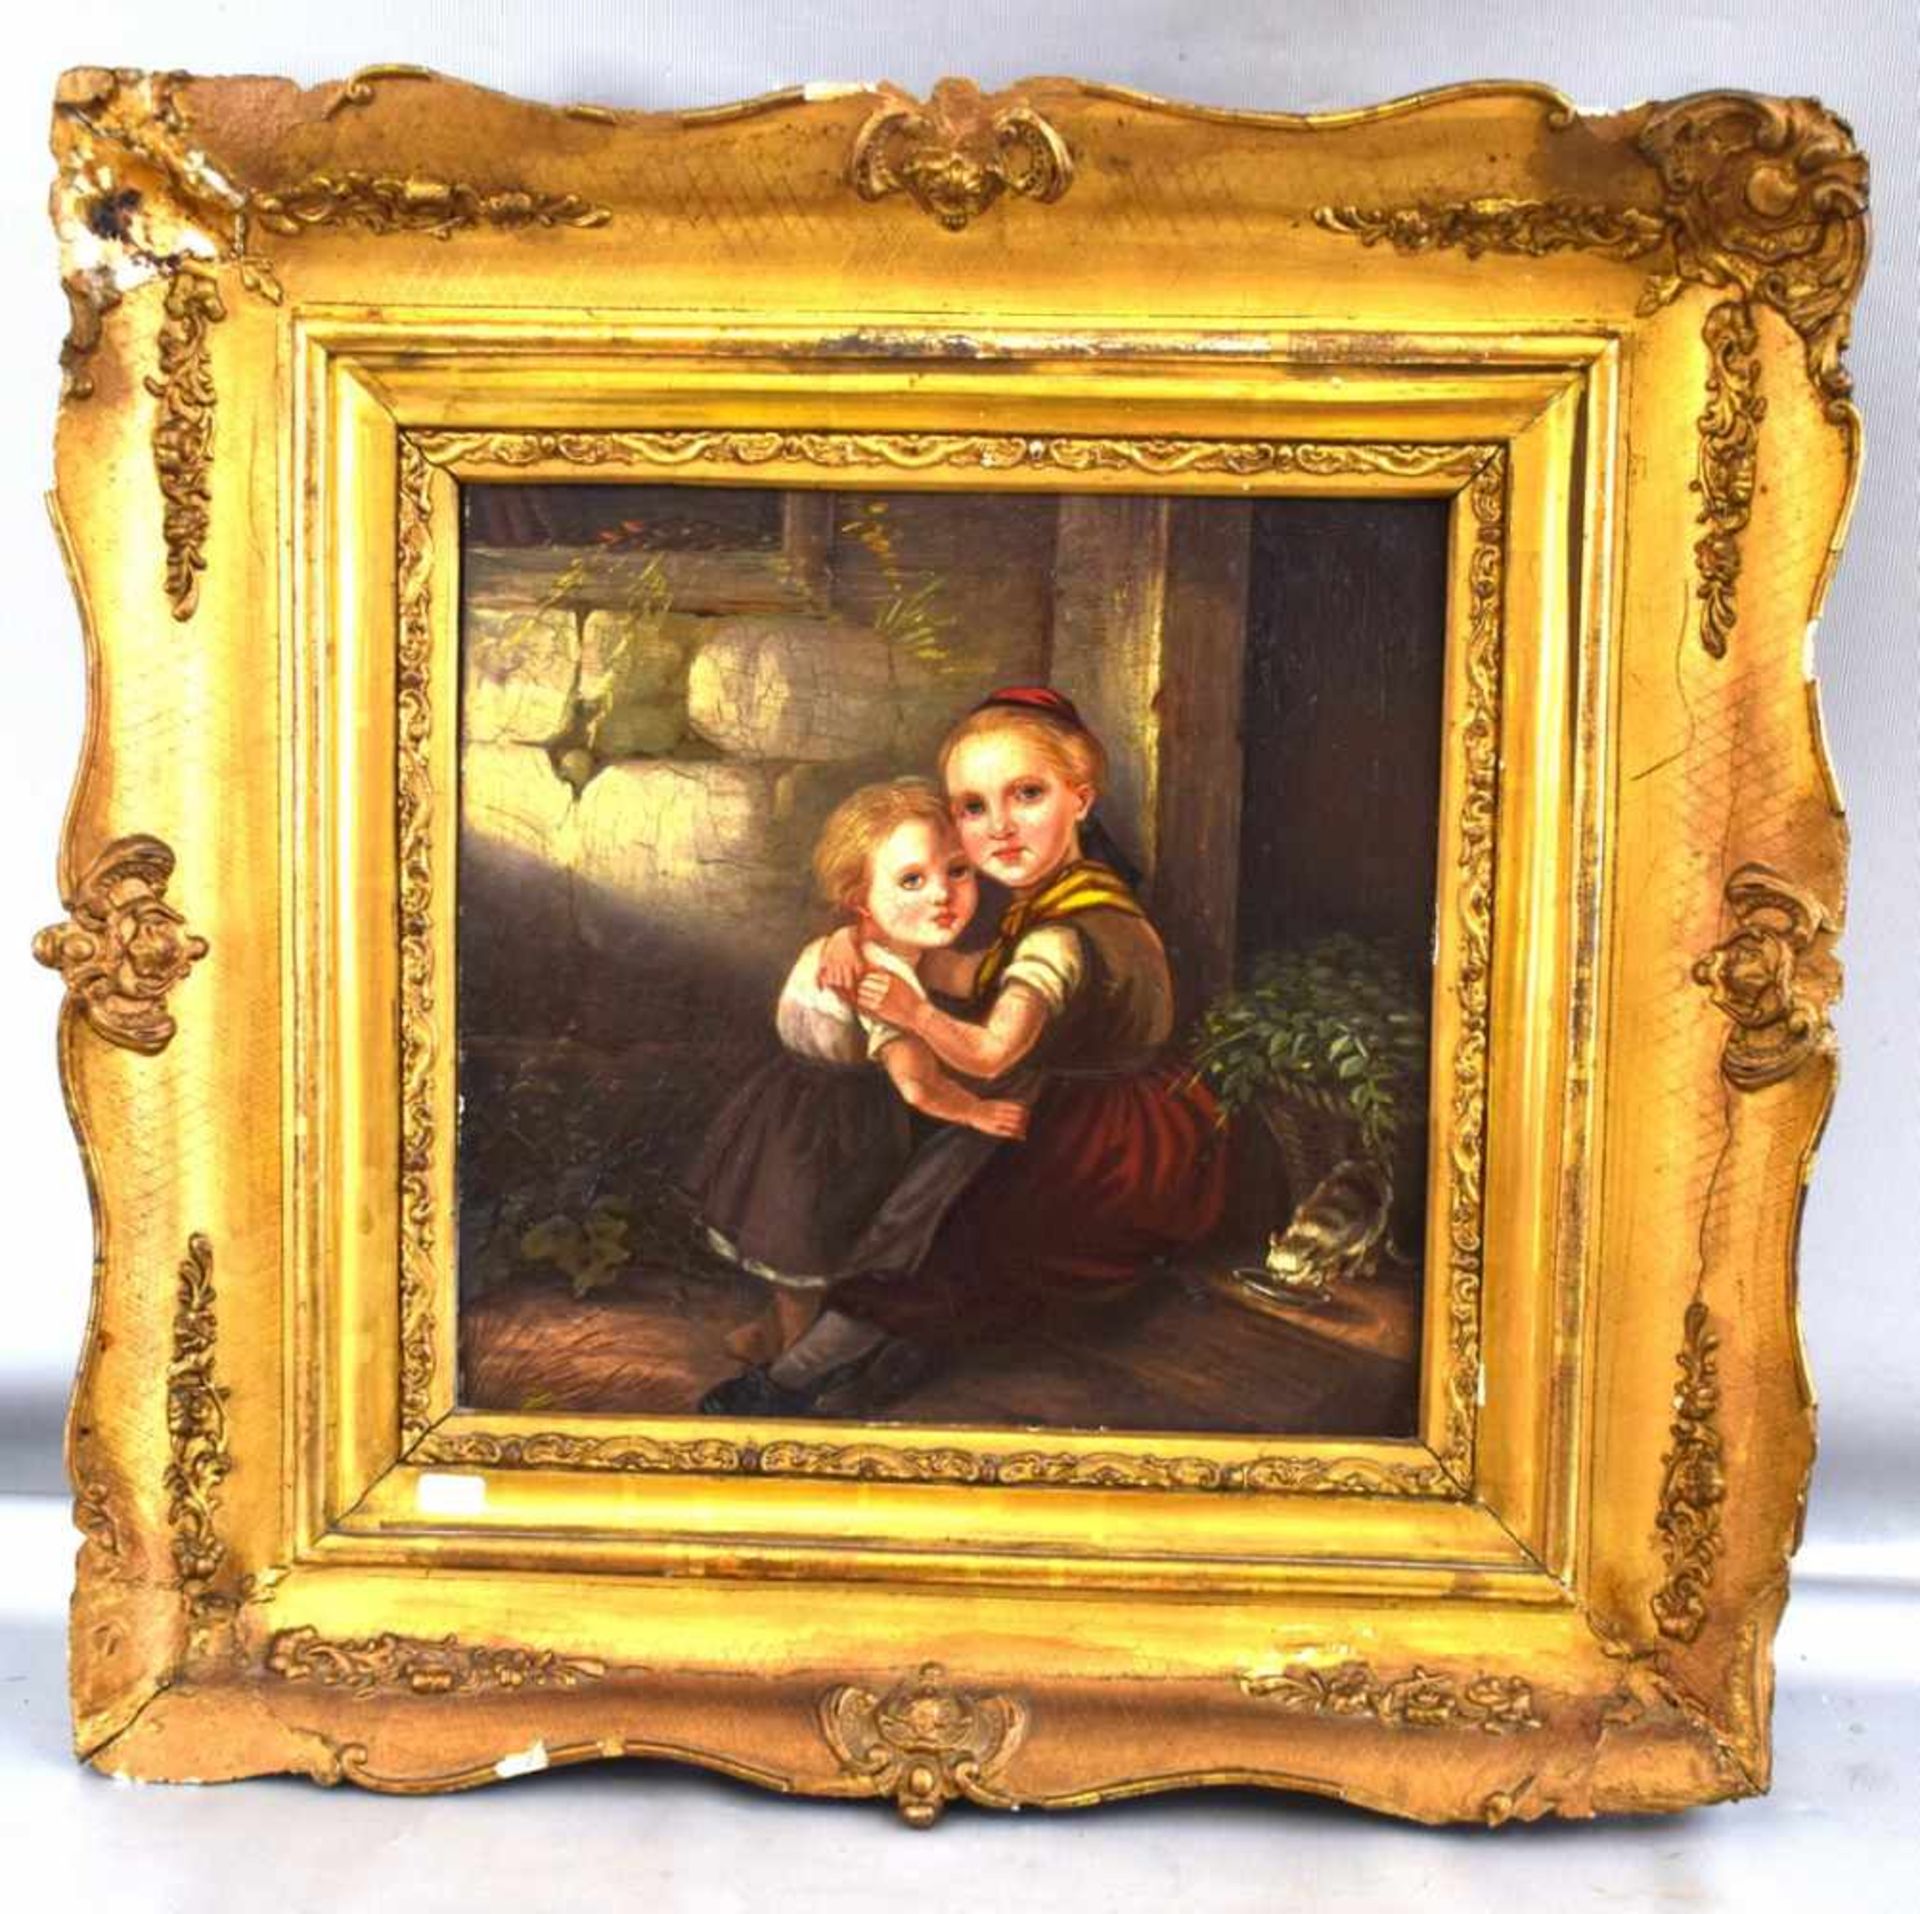 Unbekannter Maler 1. Hälfte 19. Jh., Geschwisterpaar vor Haus, mit kleiner Katze, Öl/Holz, 26 X 26